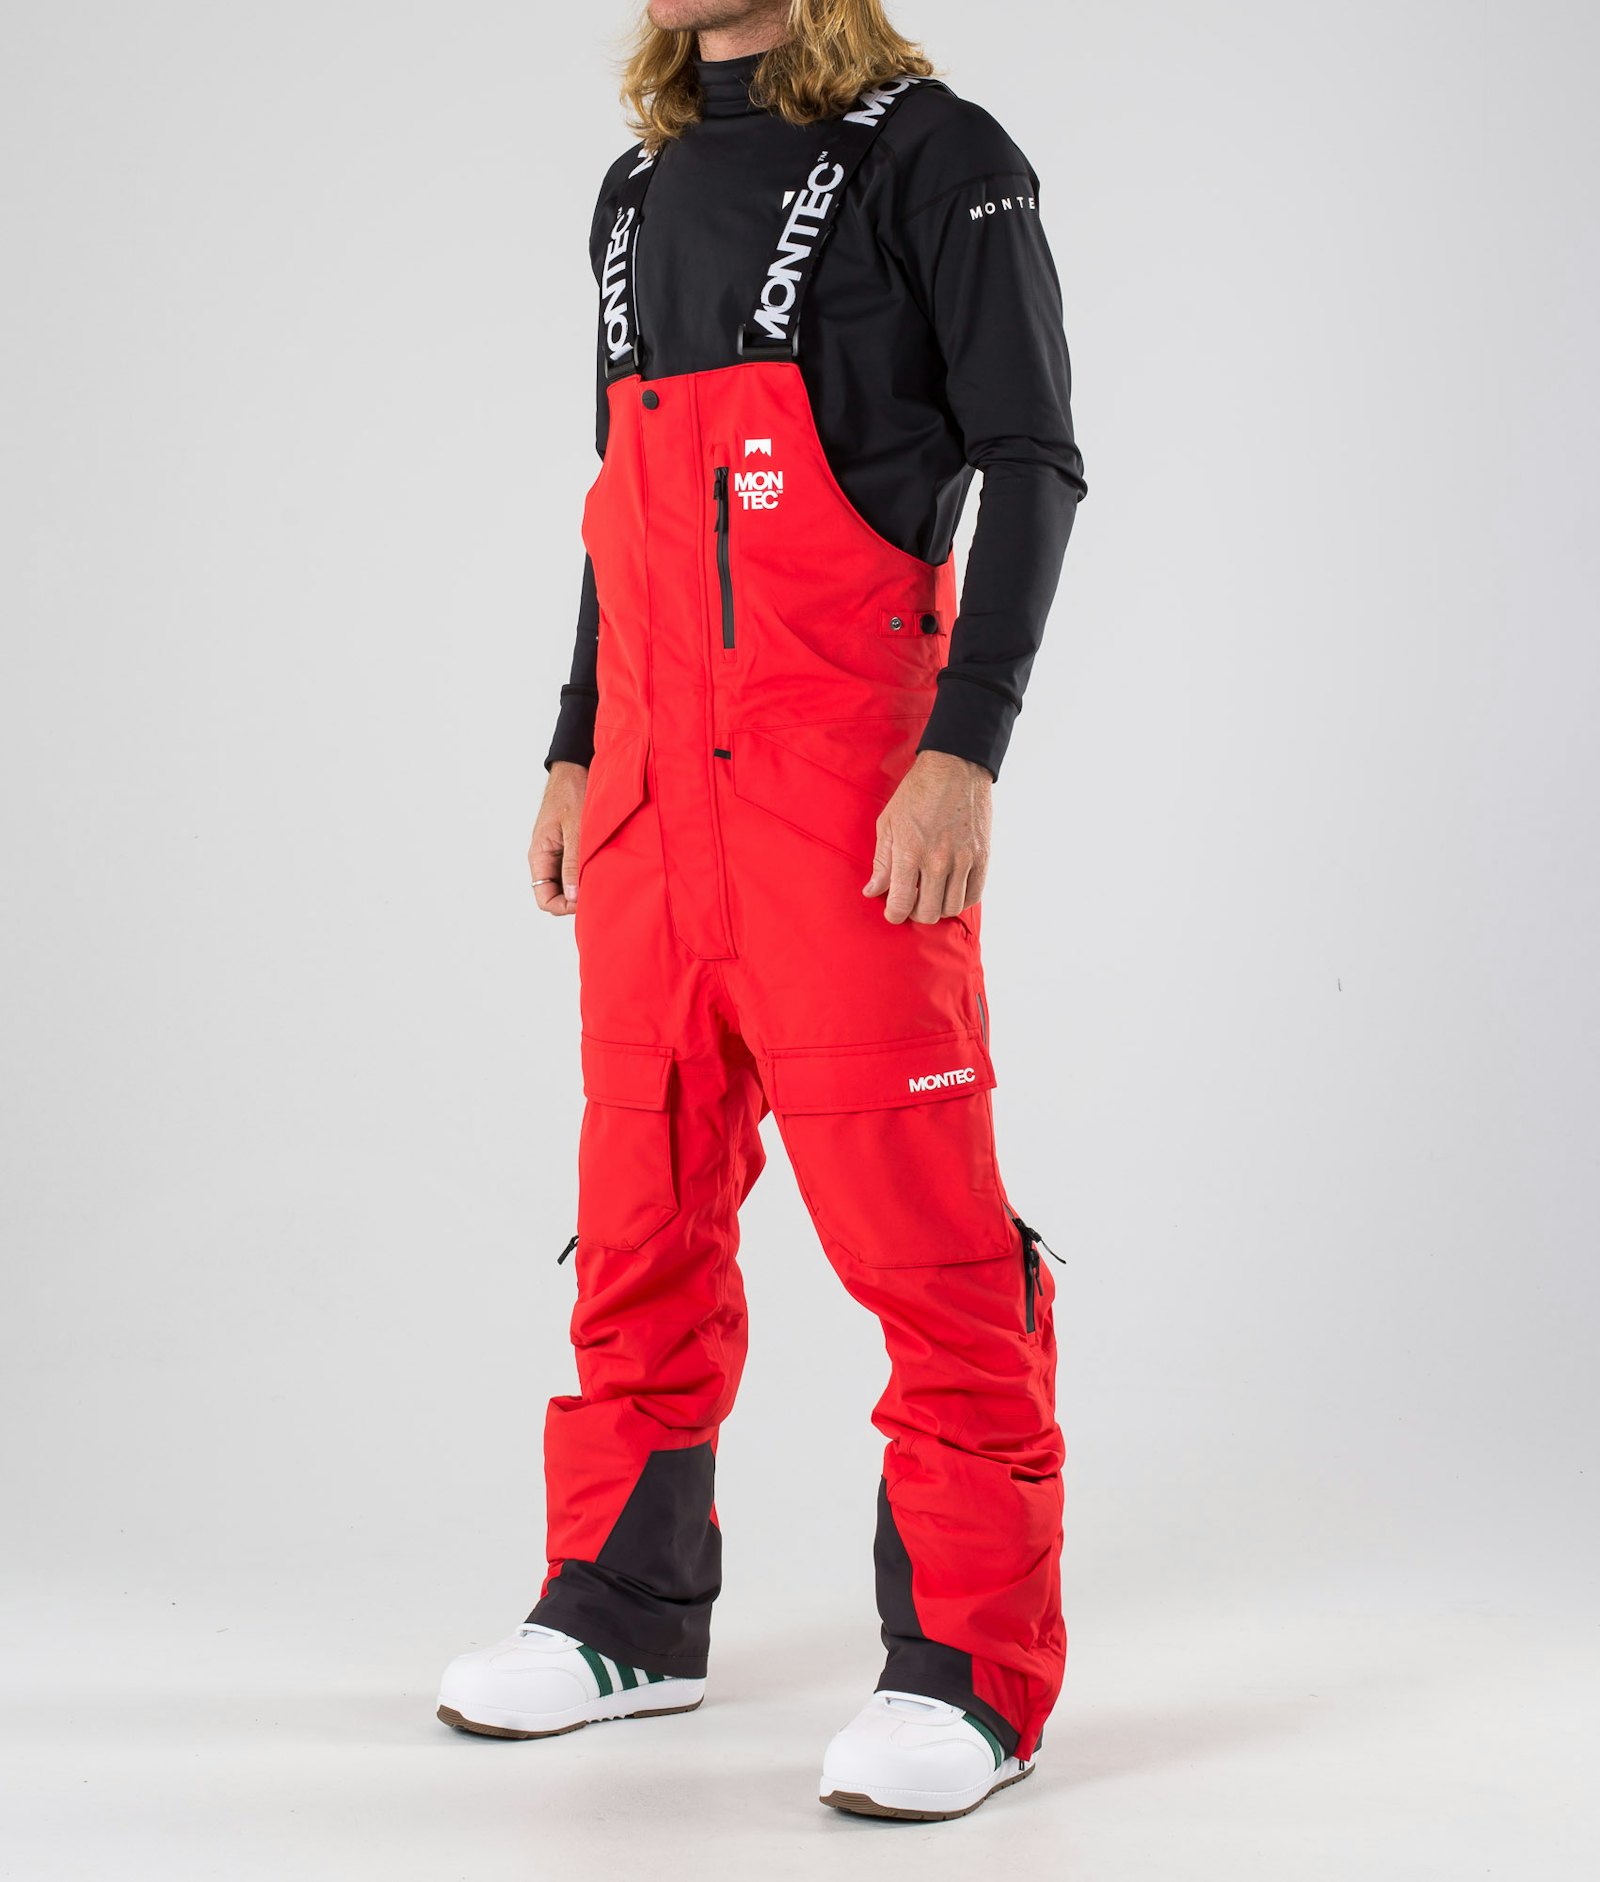 Fawk 2019 Snowboardhose Herren Red